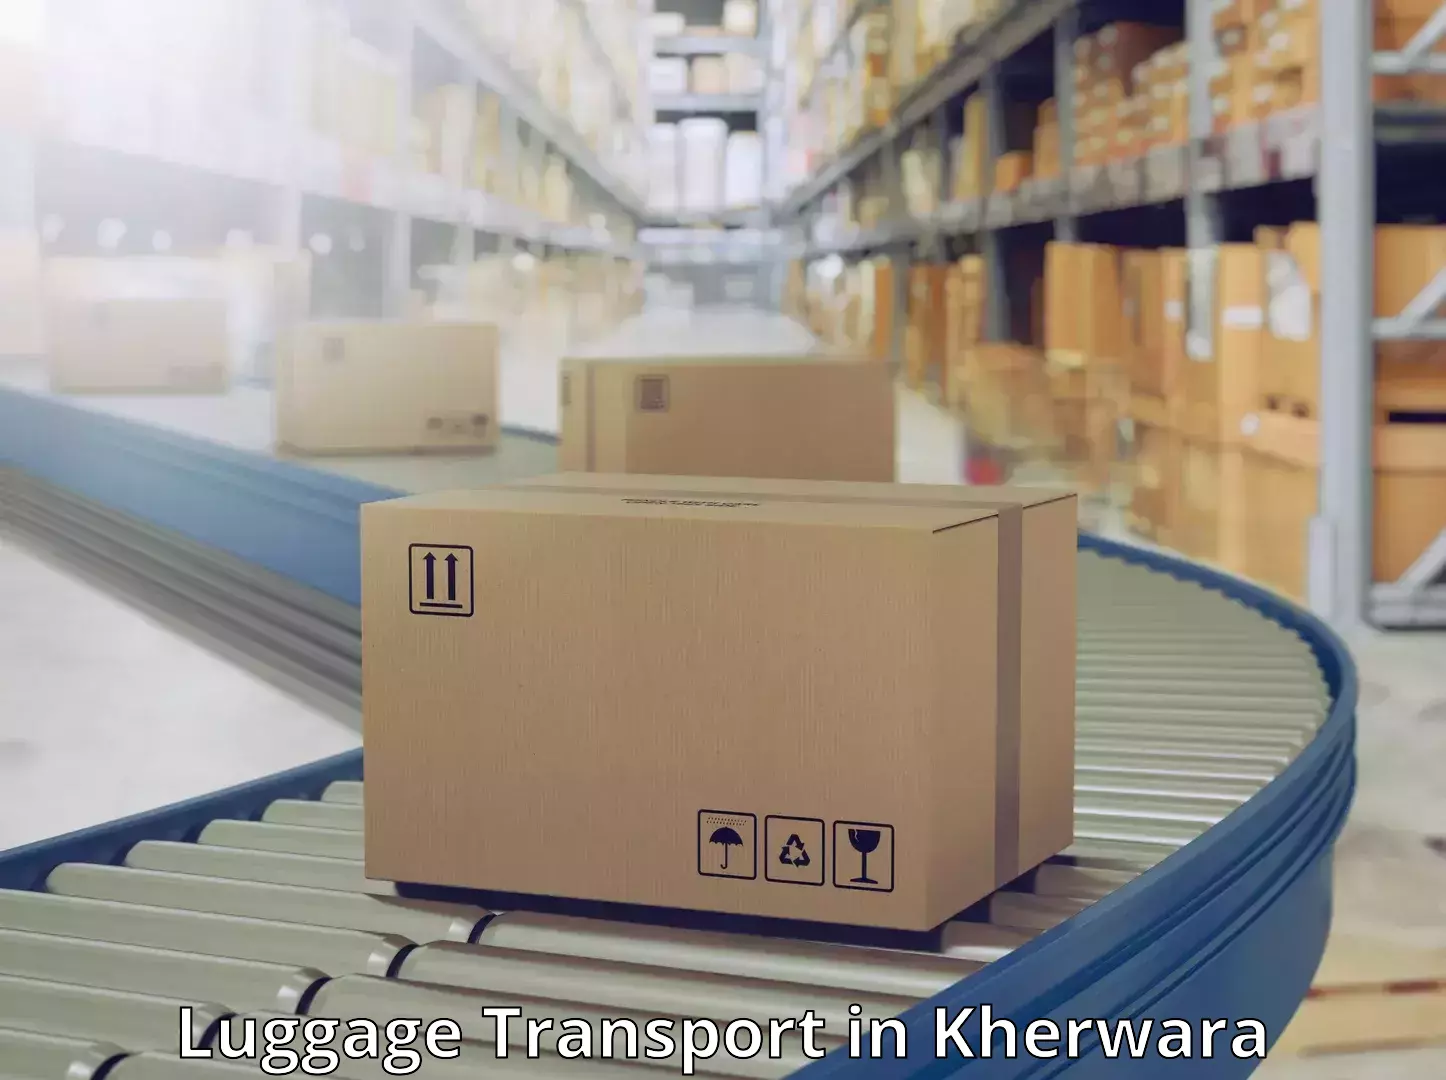 Baggage transport cost in Kherwara